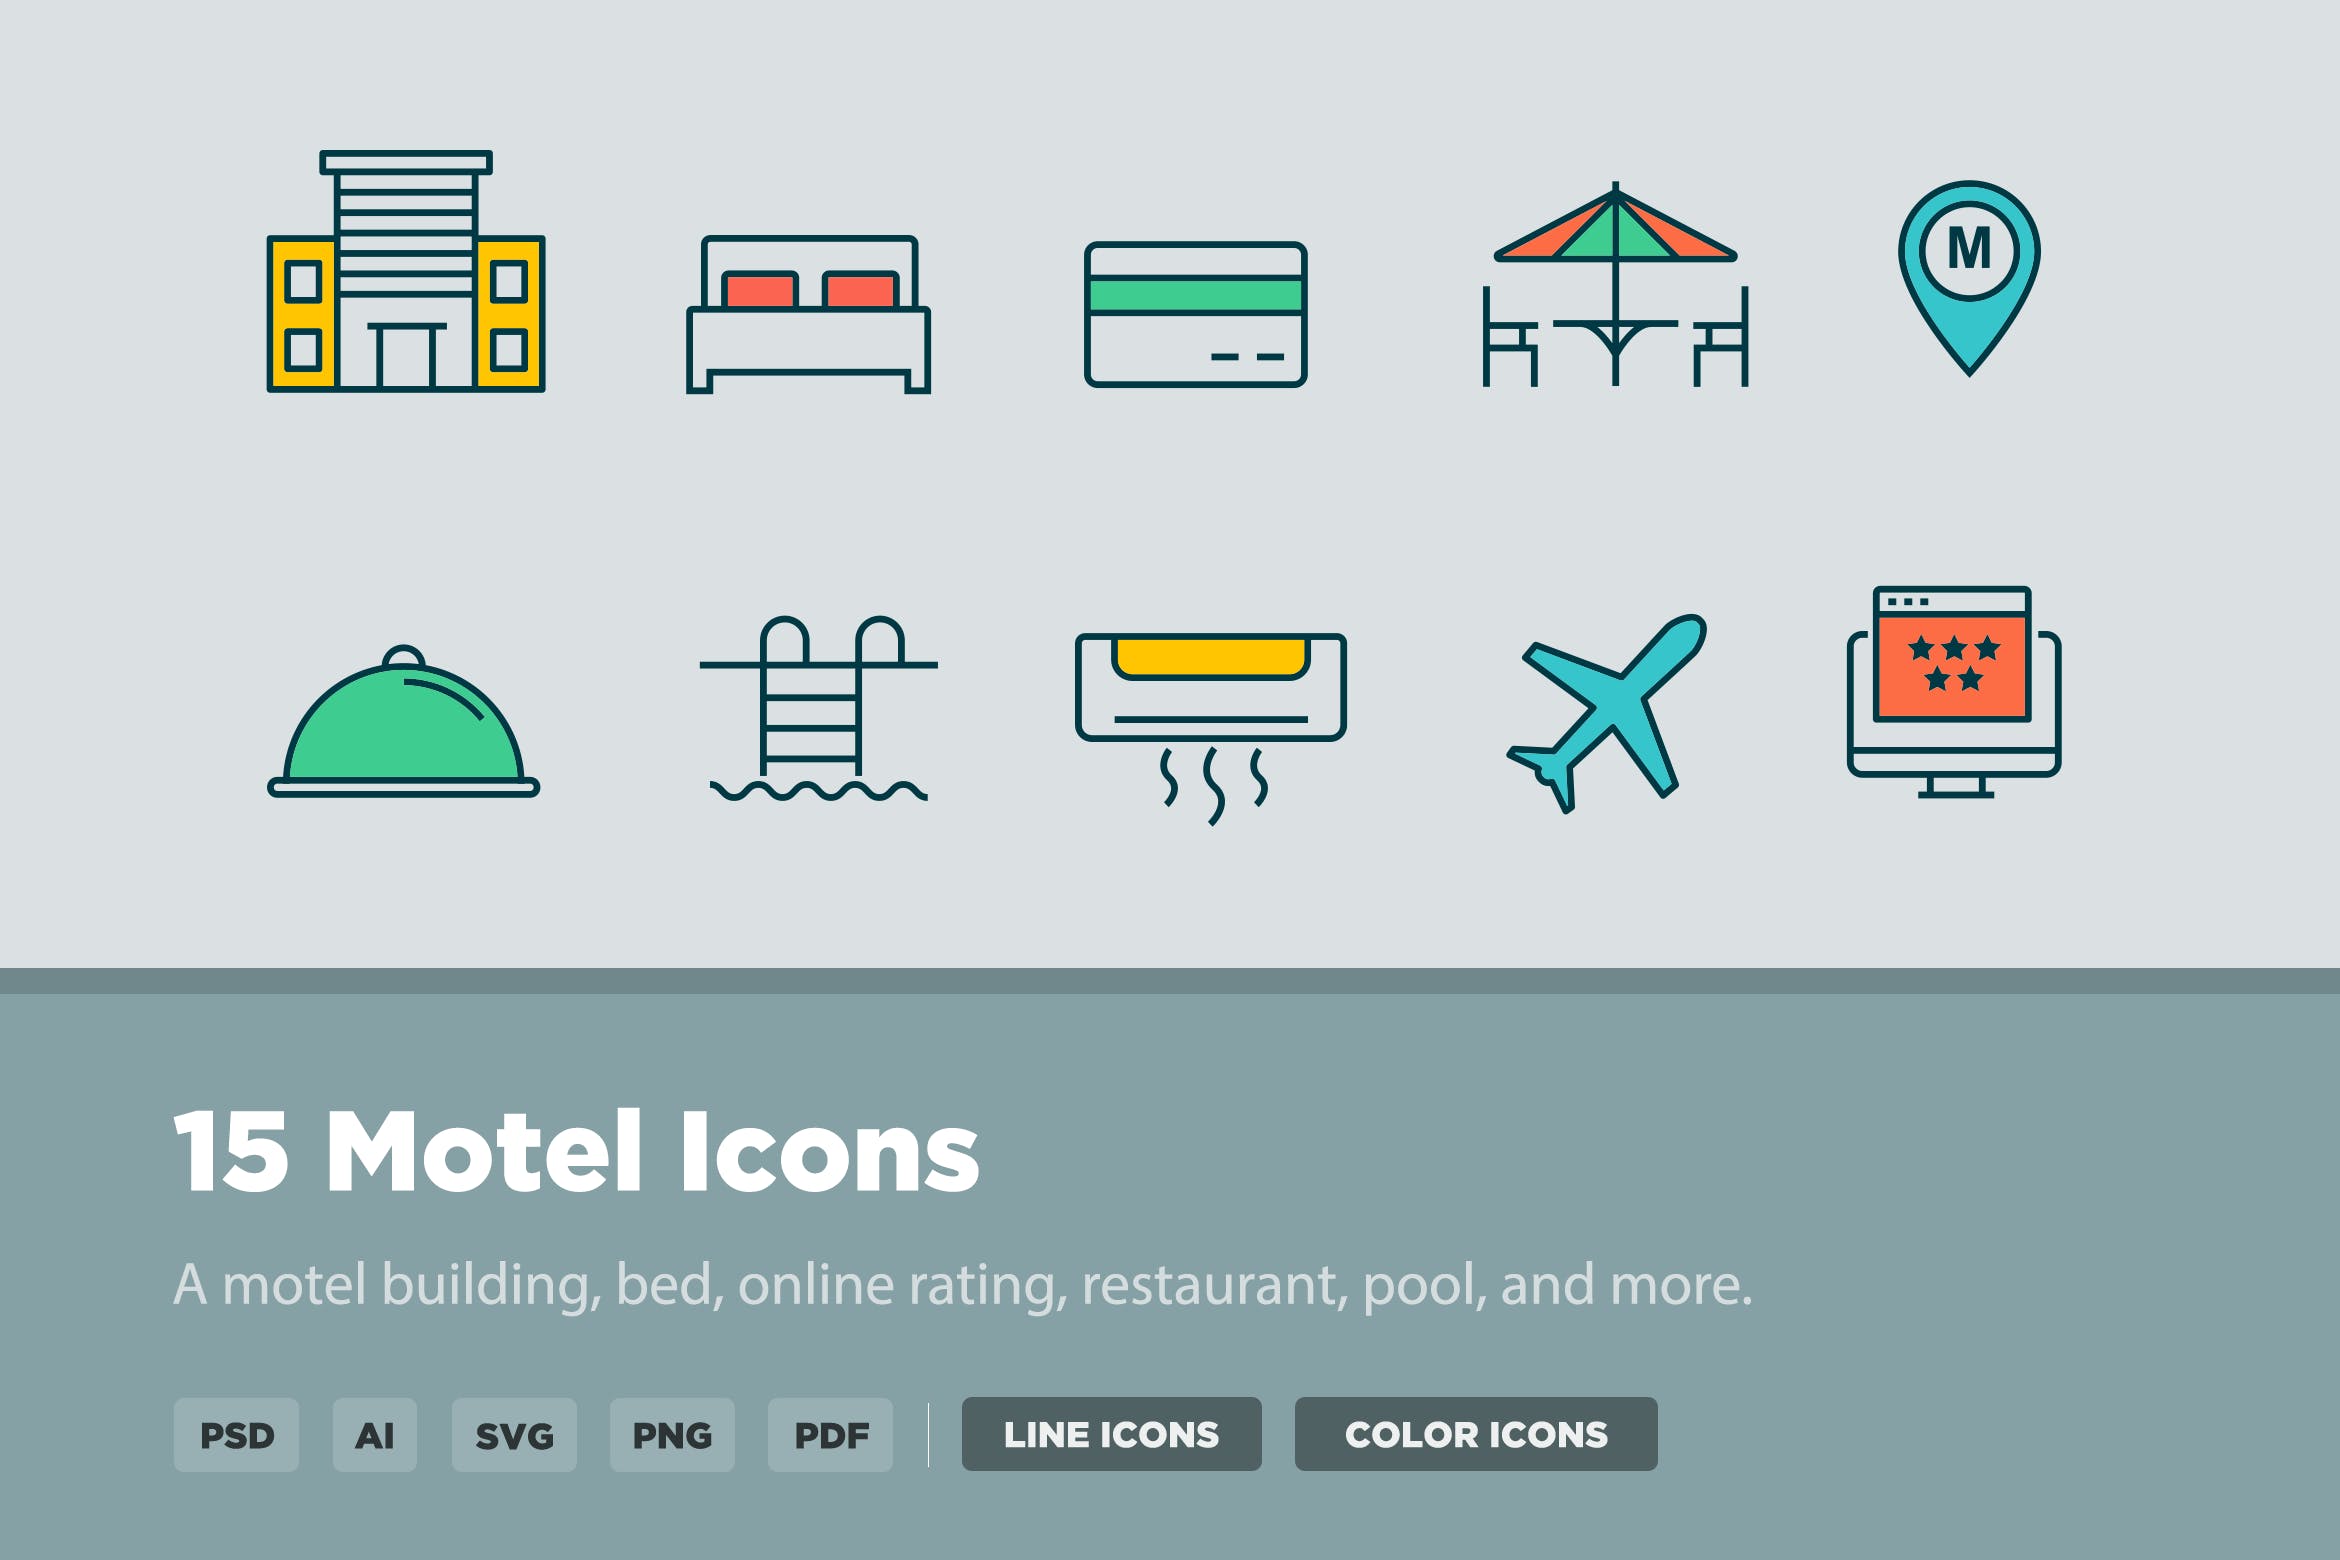 汽车旅馆矢量图标素材 15 Motel Icons